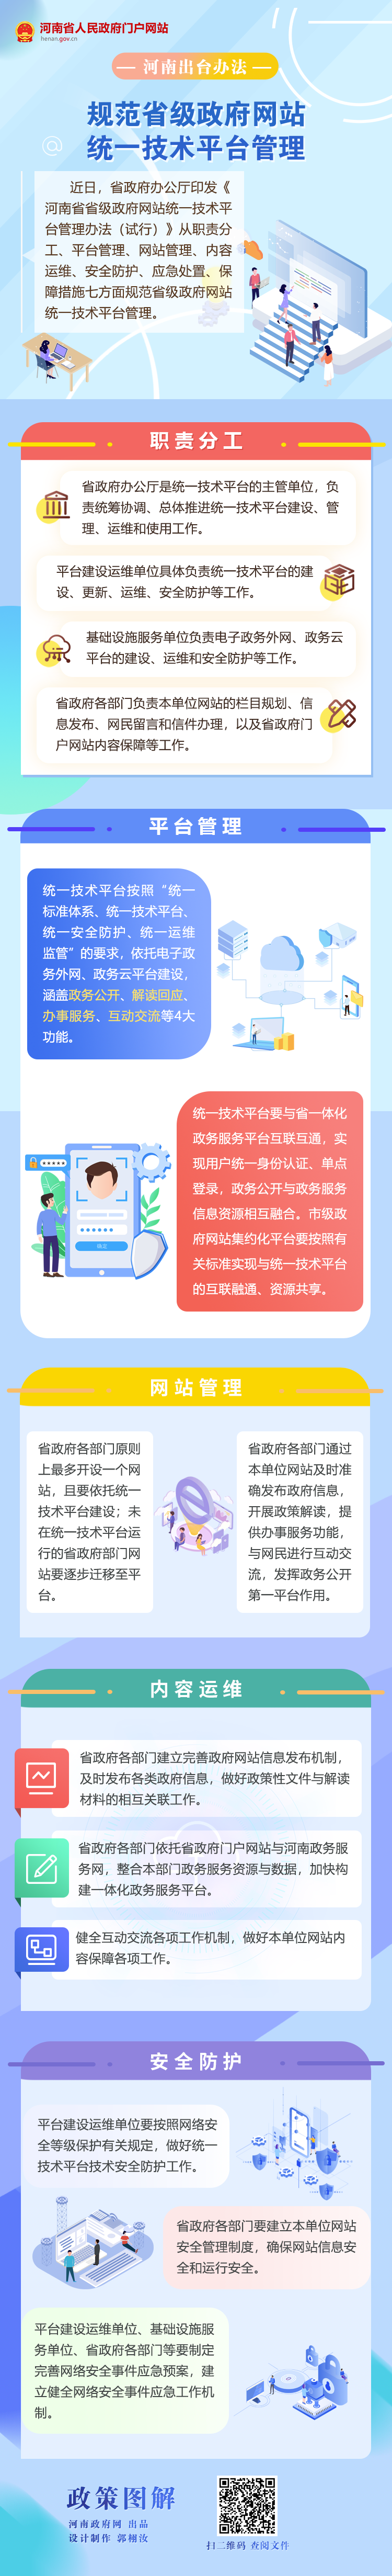 图解丨河南出台办法 规范省级政府网站统一技术平台管理